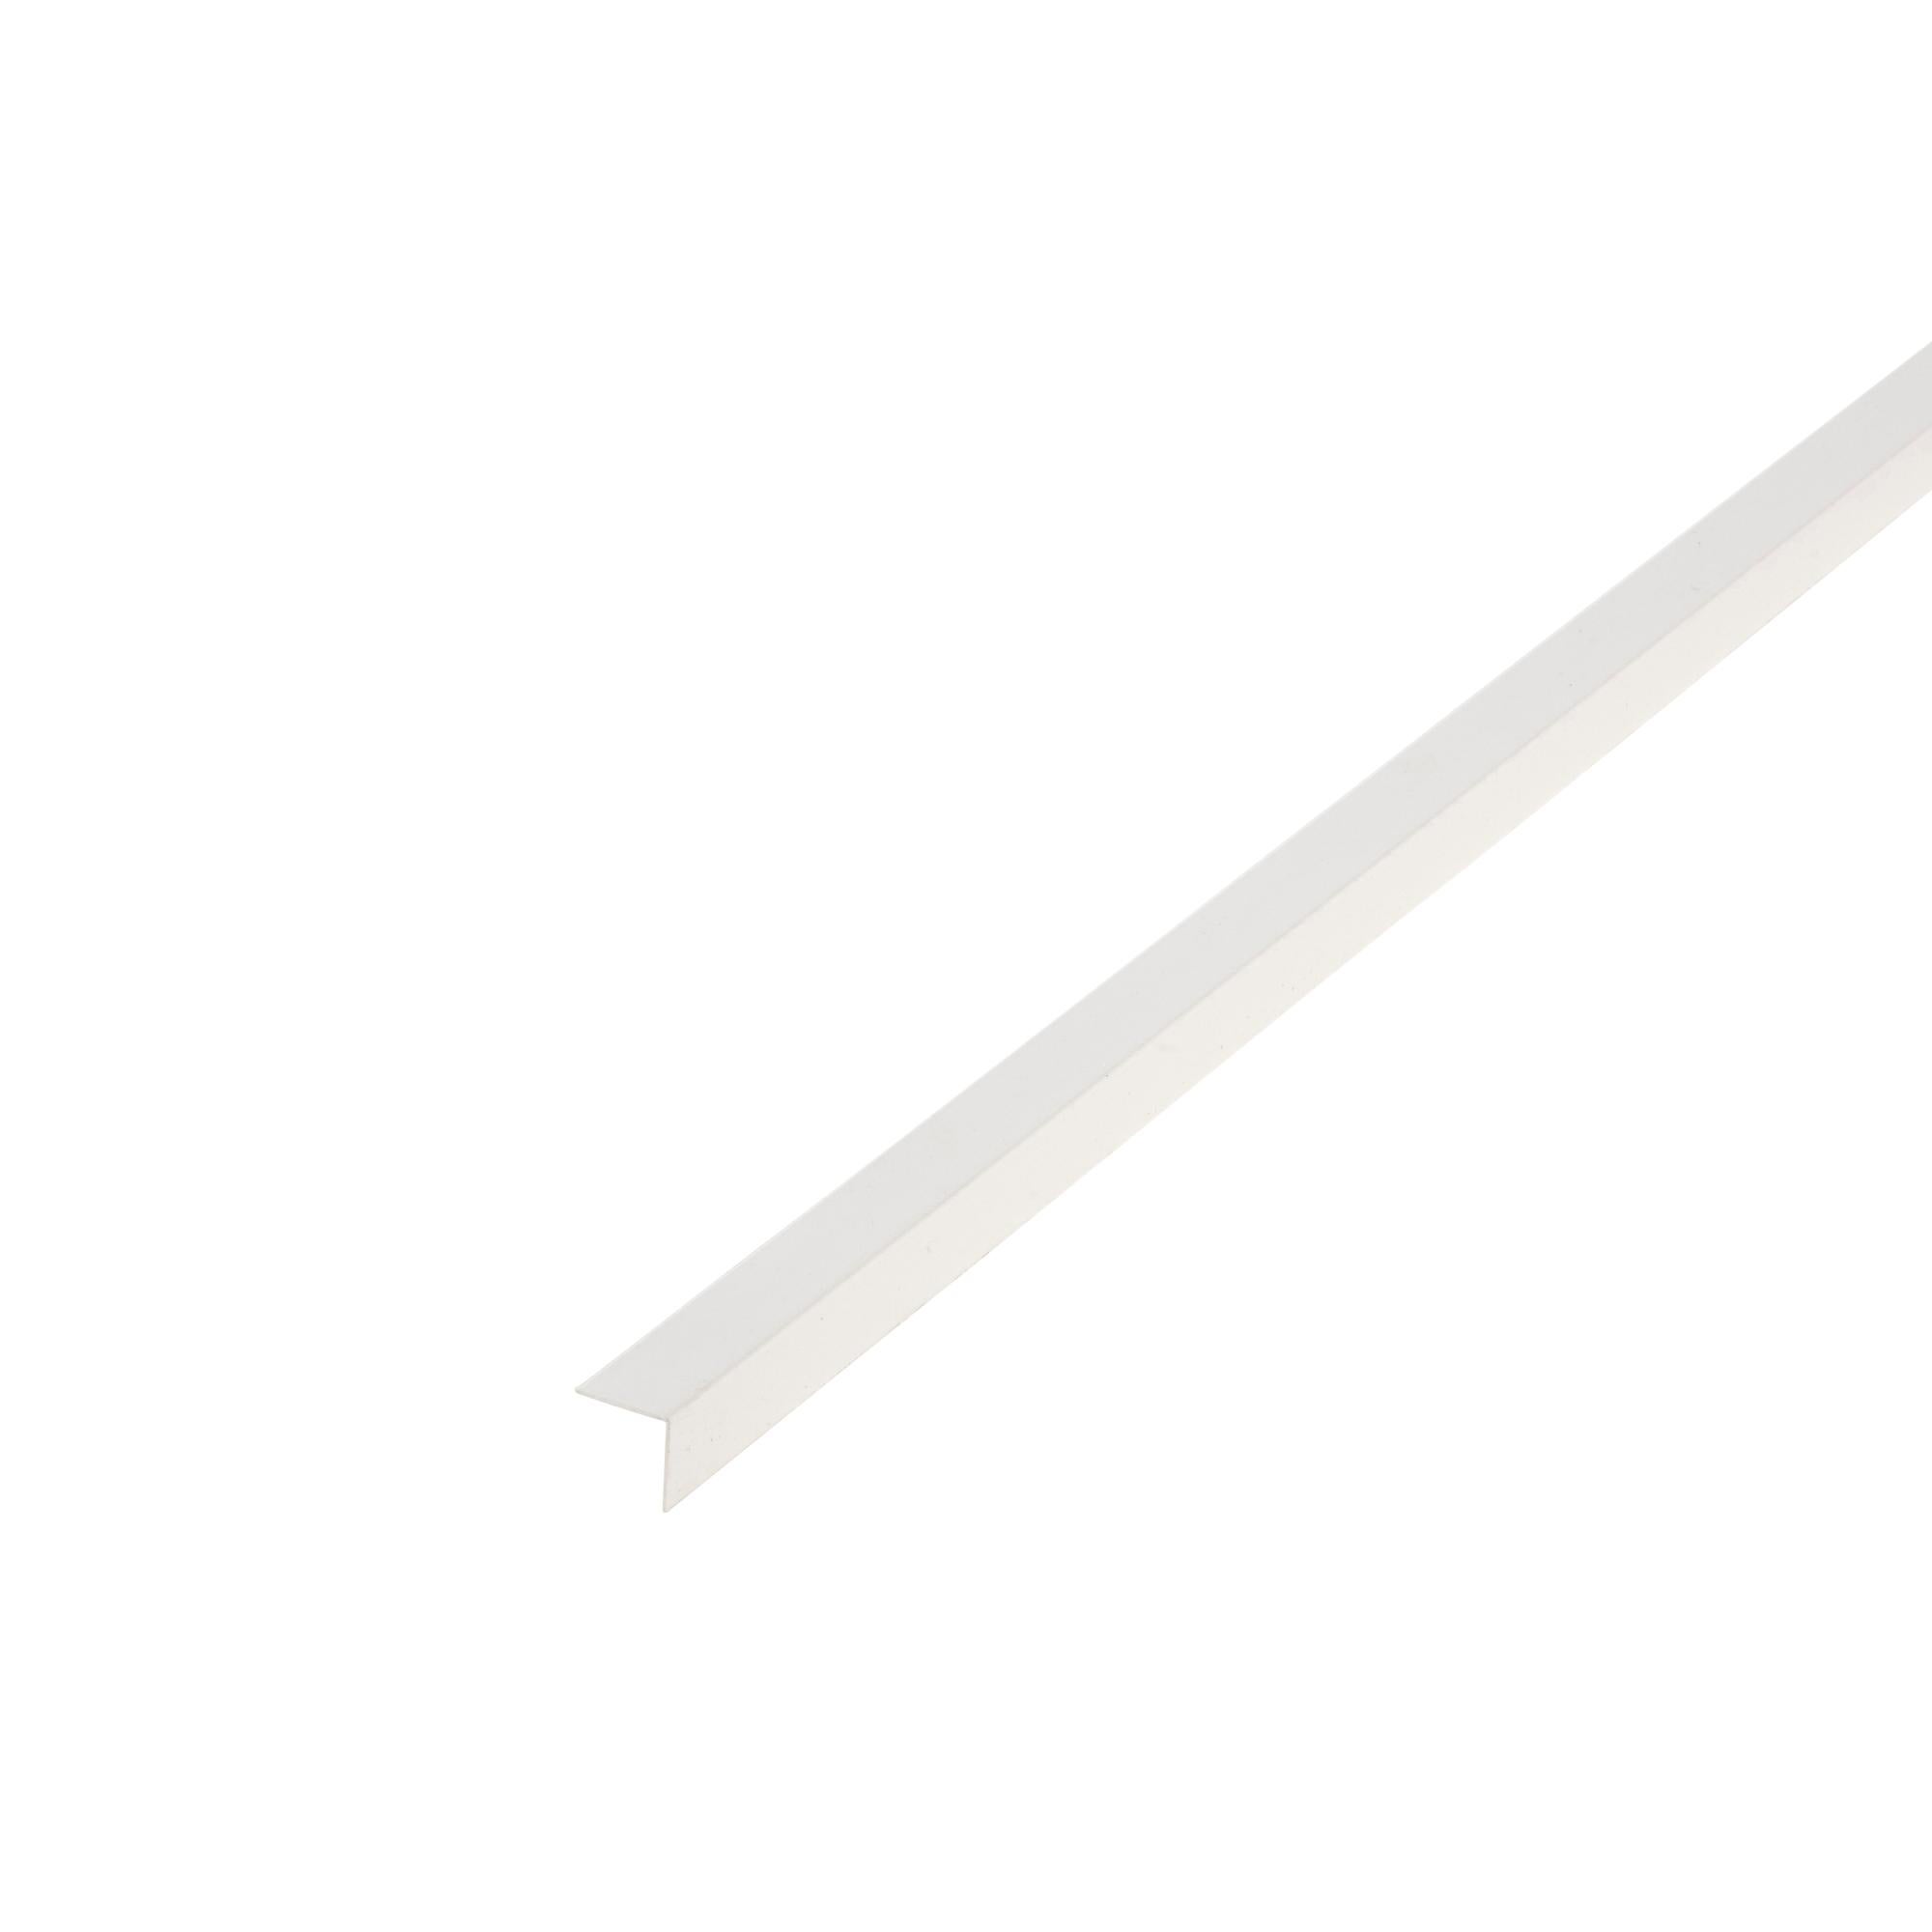 Cornière de protection d'angle adhésive en PVC souple brun 40 x 40 mm, 70 cm